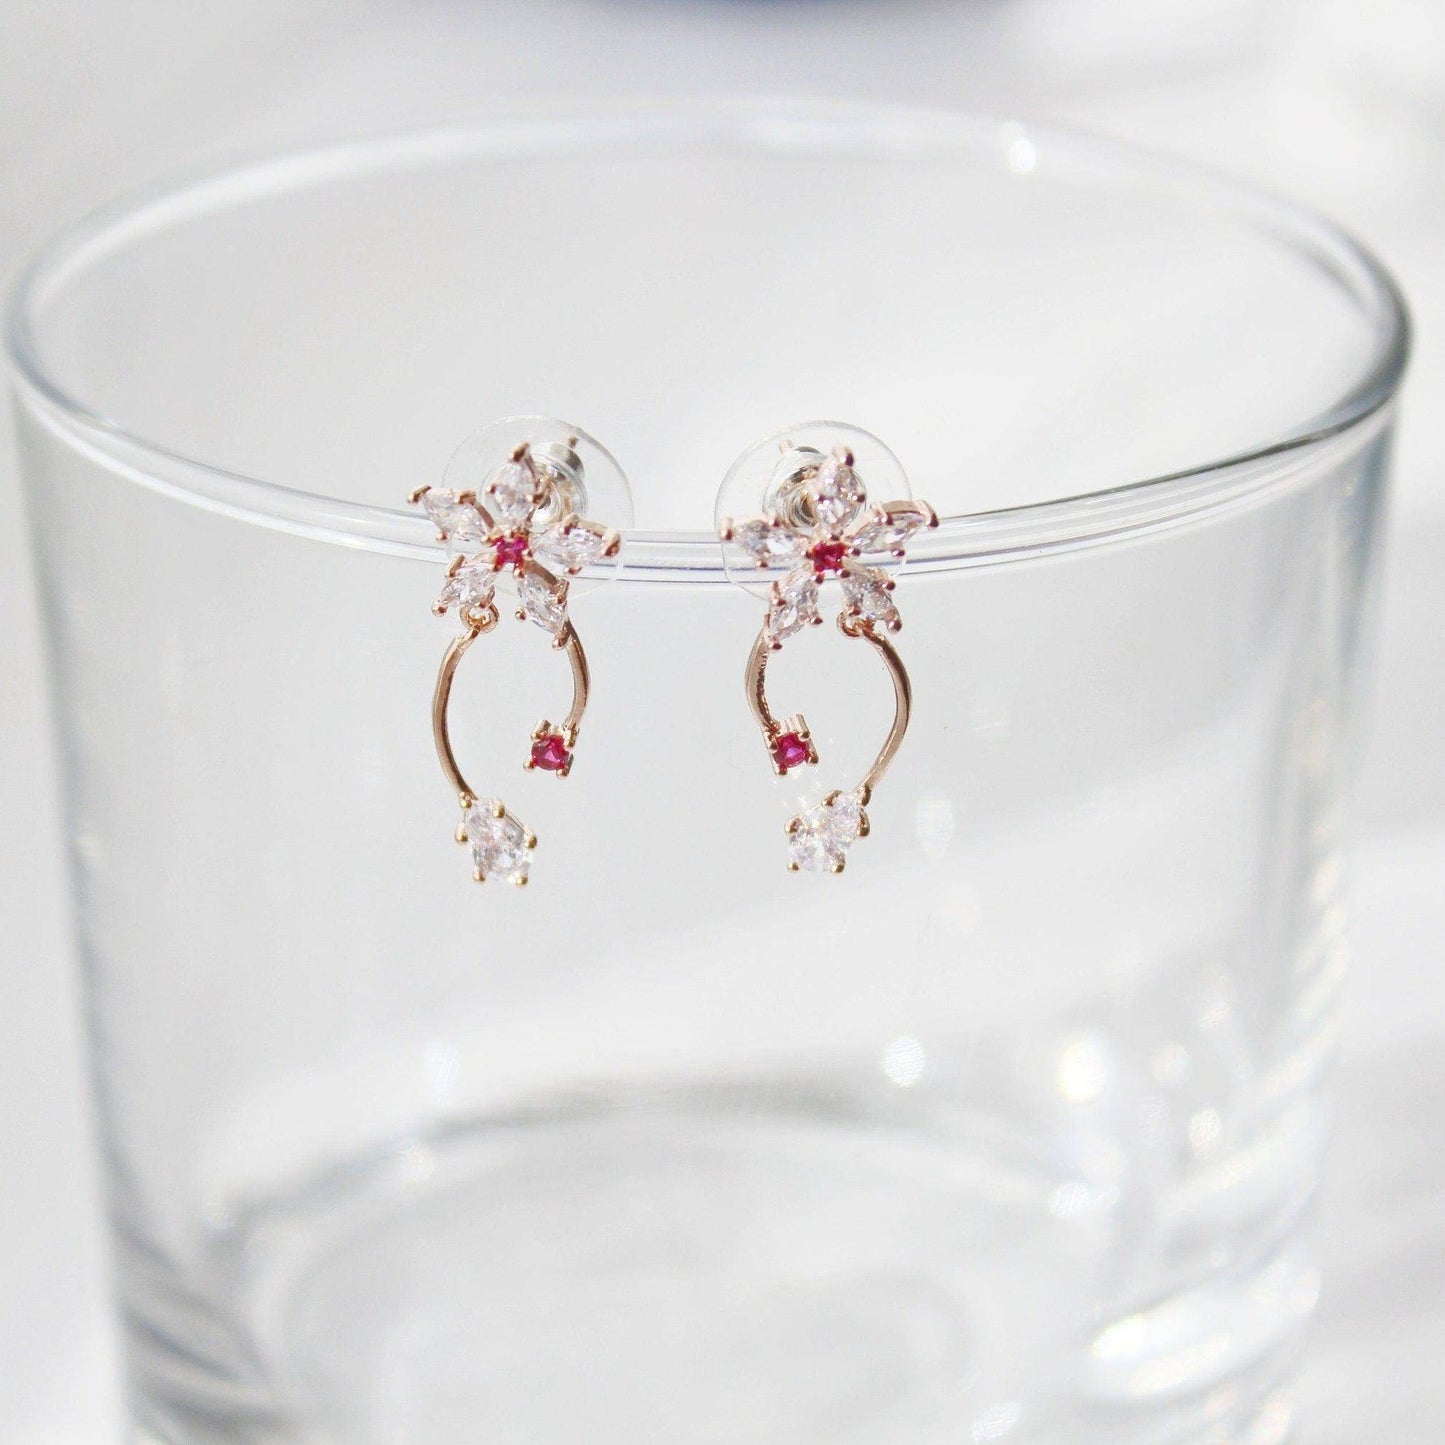 Cypress Vine Flower Earrings - Star Shape Flower with Red Crystal Mini Drop Earrings-Ninaouity